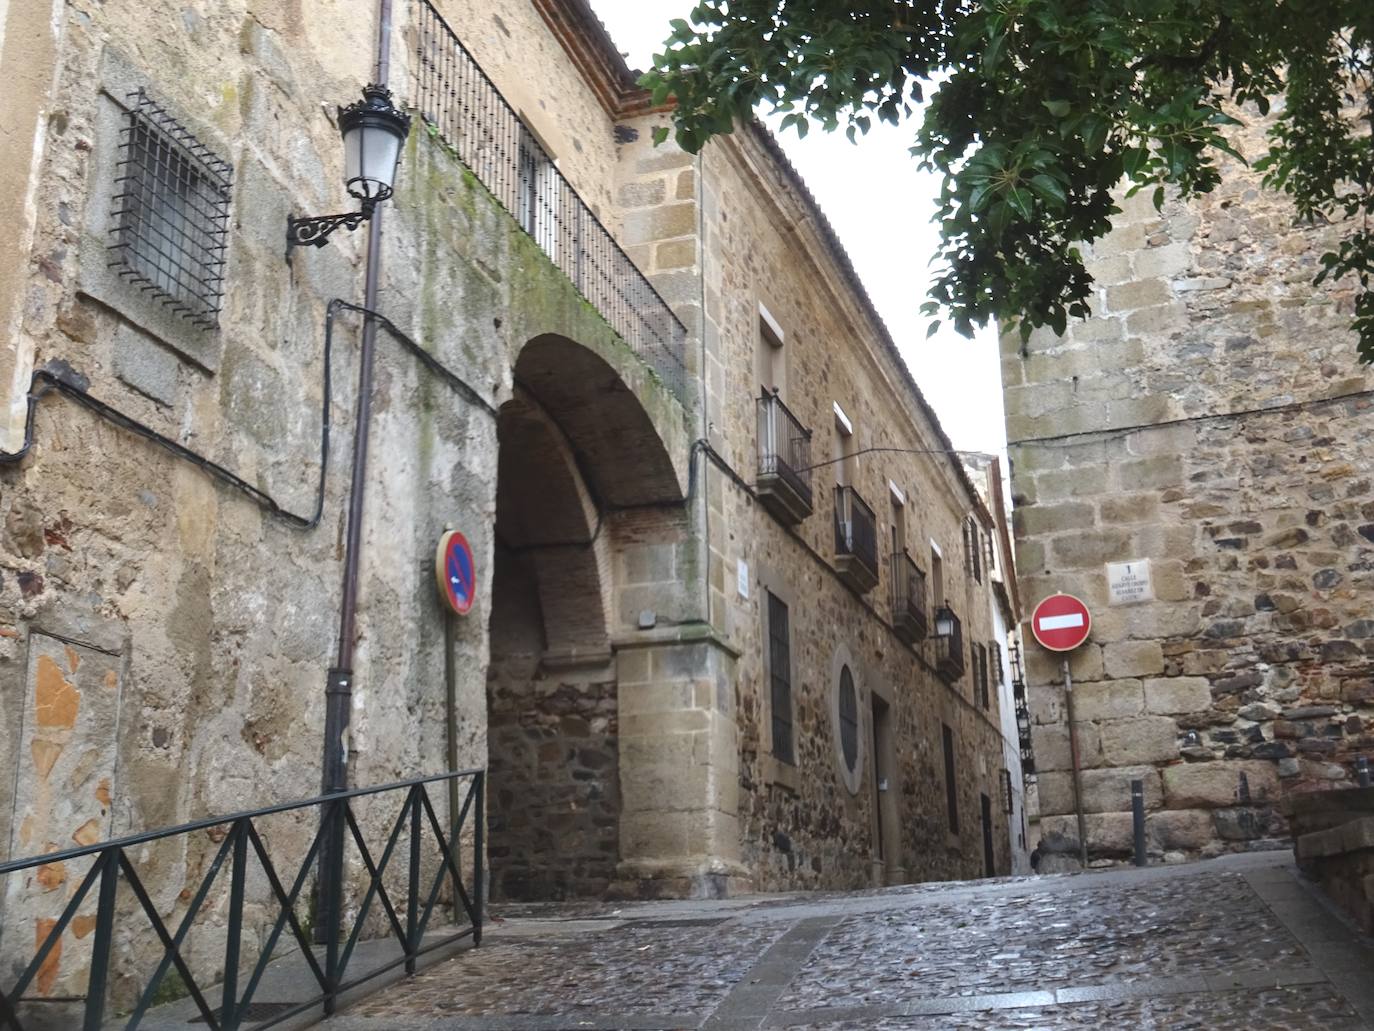 La zona en la que estaba la Puerta de Coria, derribada en 1879. A la izquierda de la imagen, tras una reja, está la imagen que se encontraba en la Puerta.